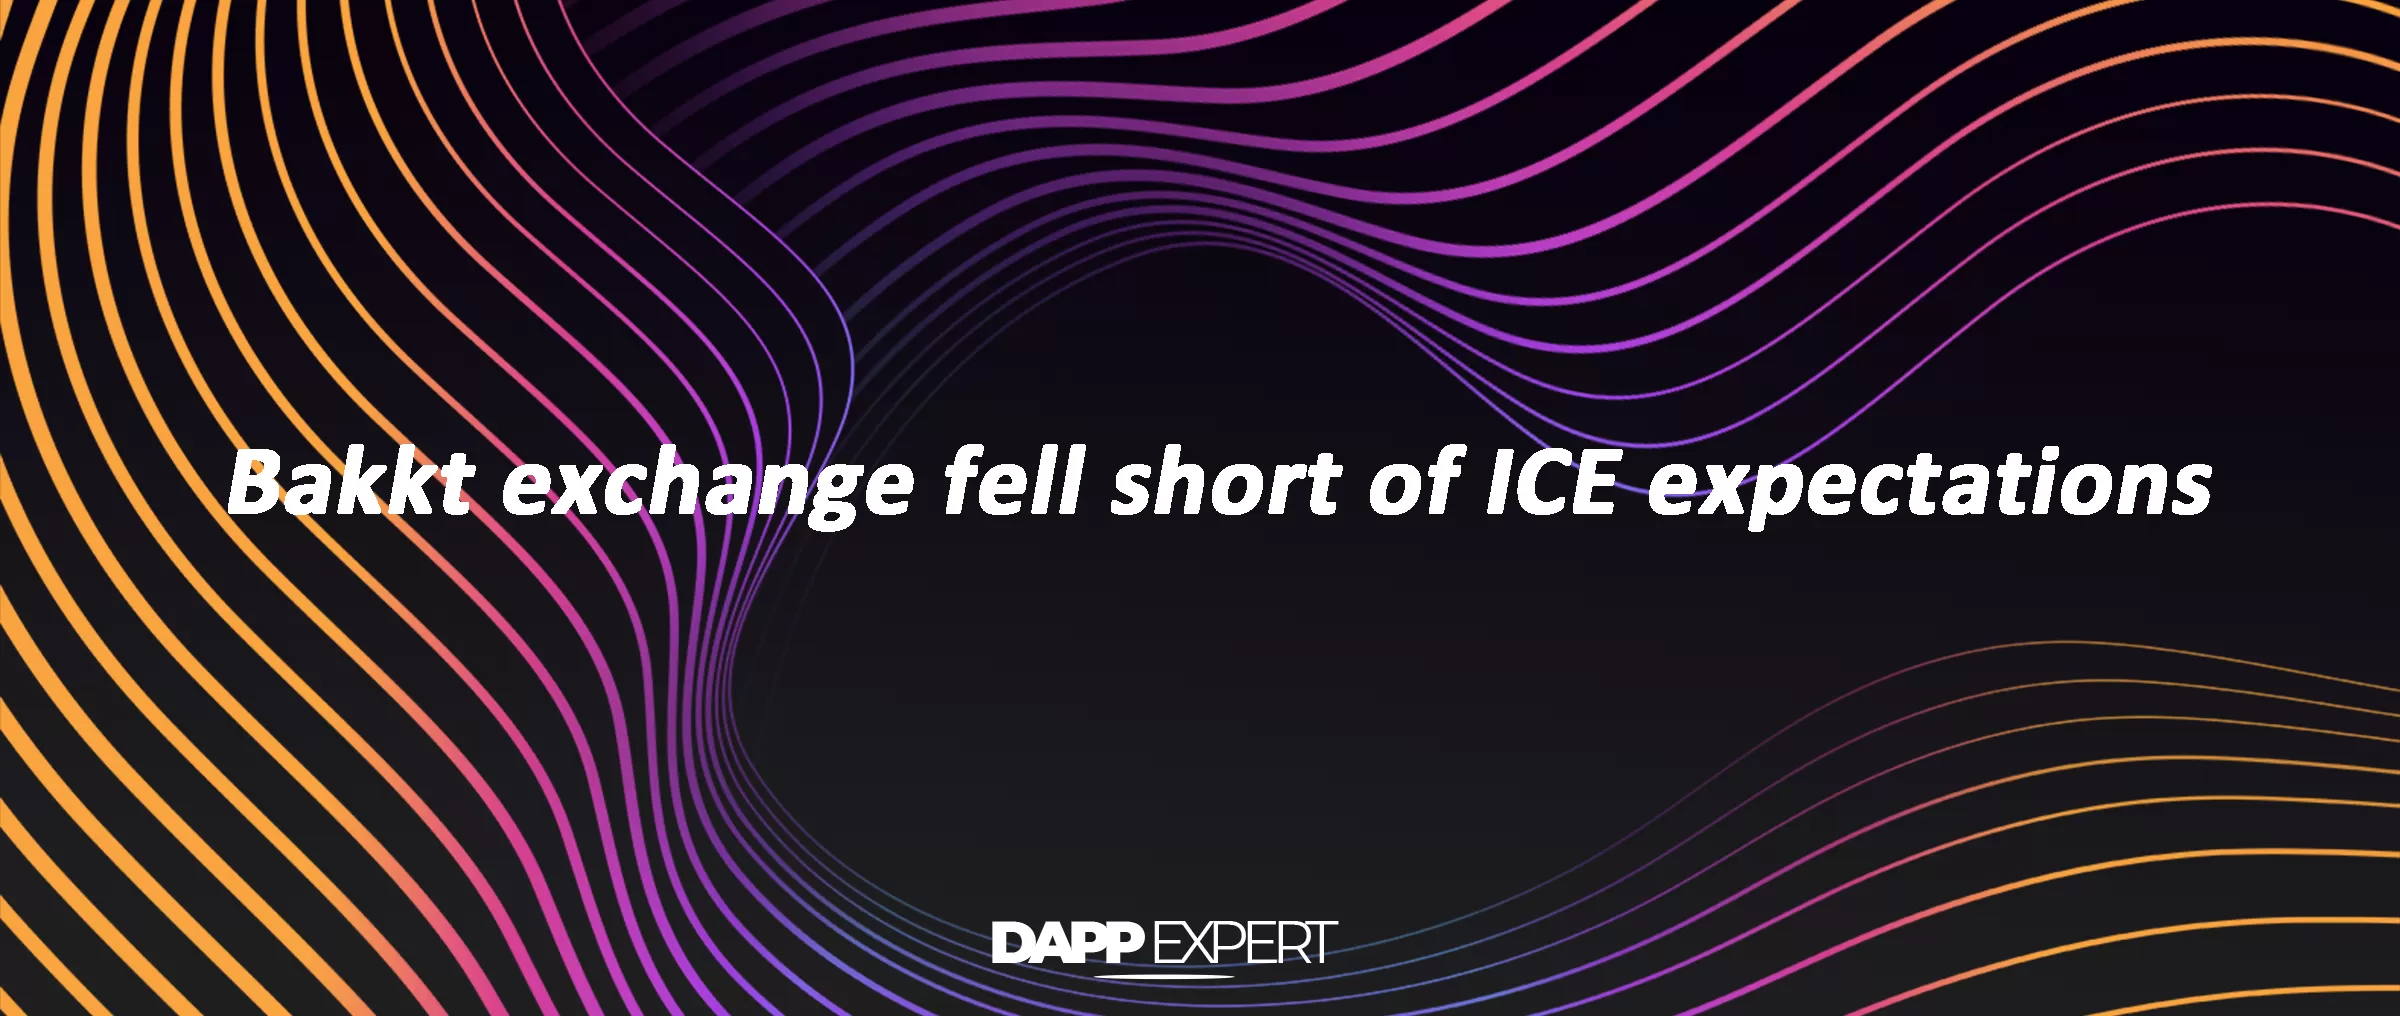 Bakkt exchange fell short of ICE expectations